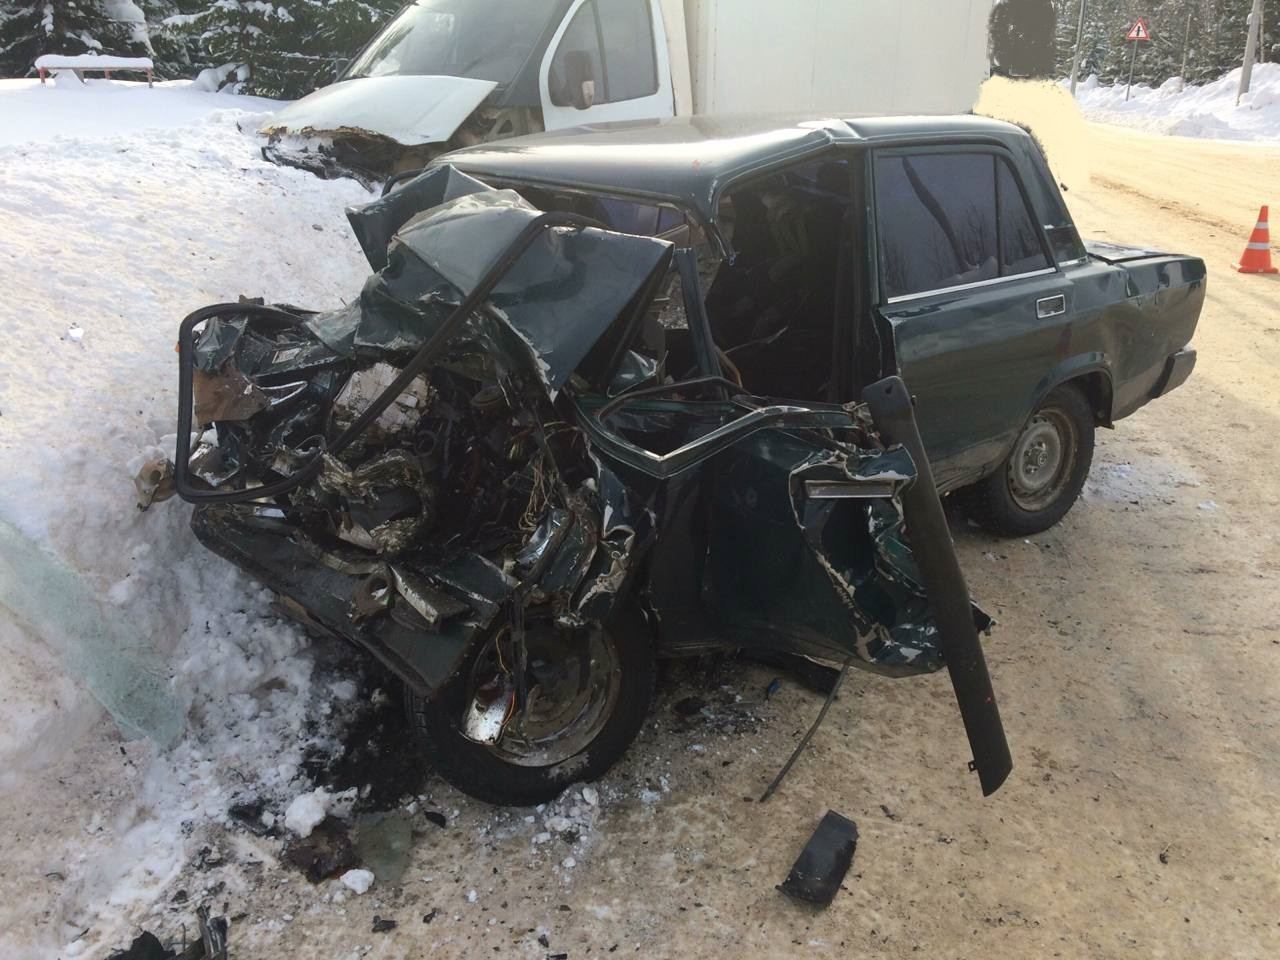 Стало известно, что разбившийся в ДТП молодой человек угнал автомобиль из Кирово-Чепецкого района